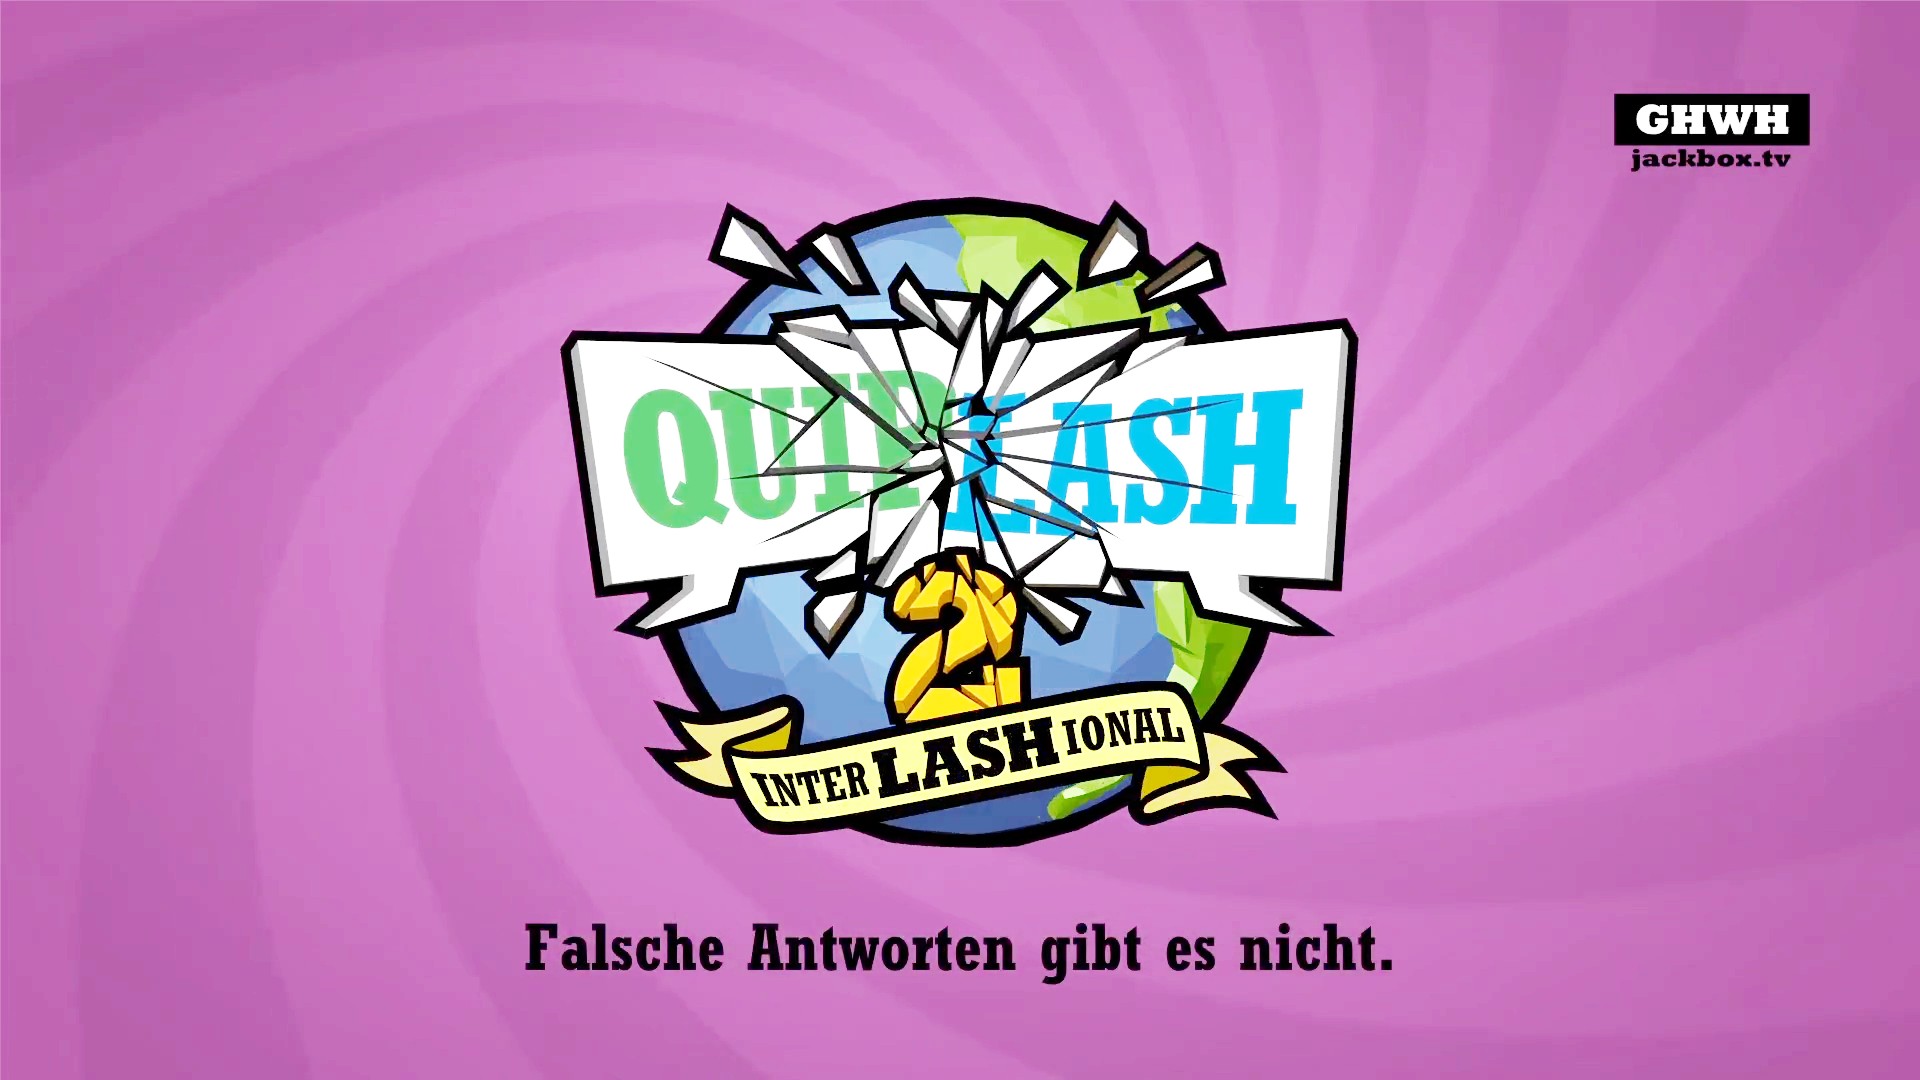 <img src="quiplash.jpg" alt="quiplash online game"/> 